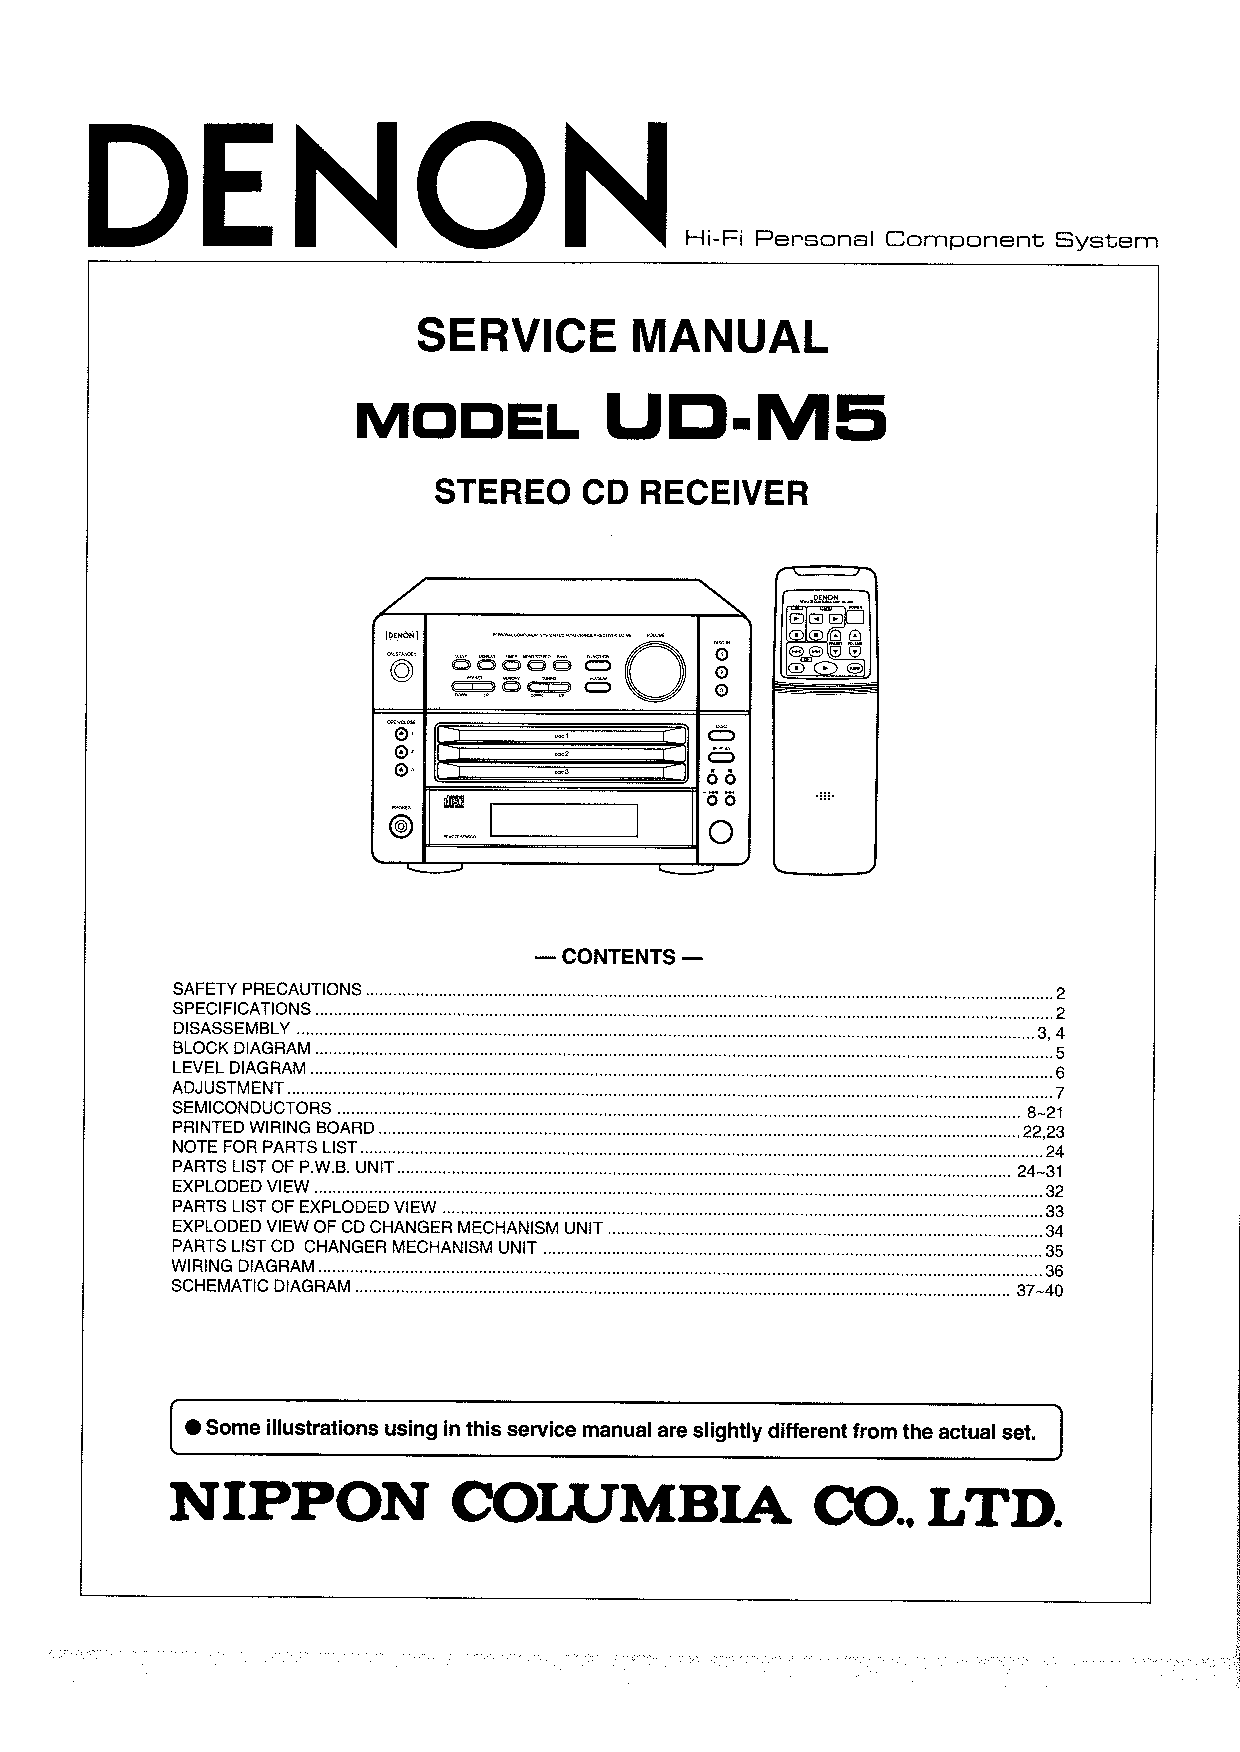 Denon UD-M5 Service Manual